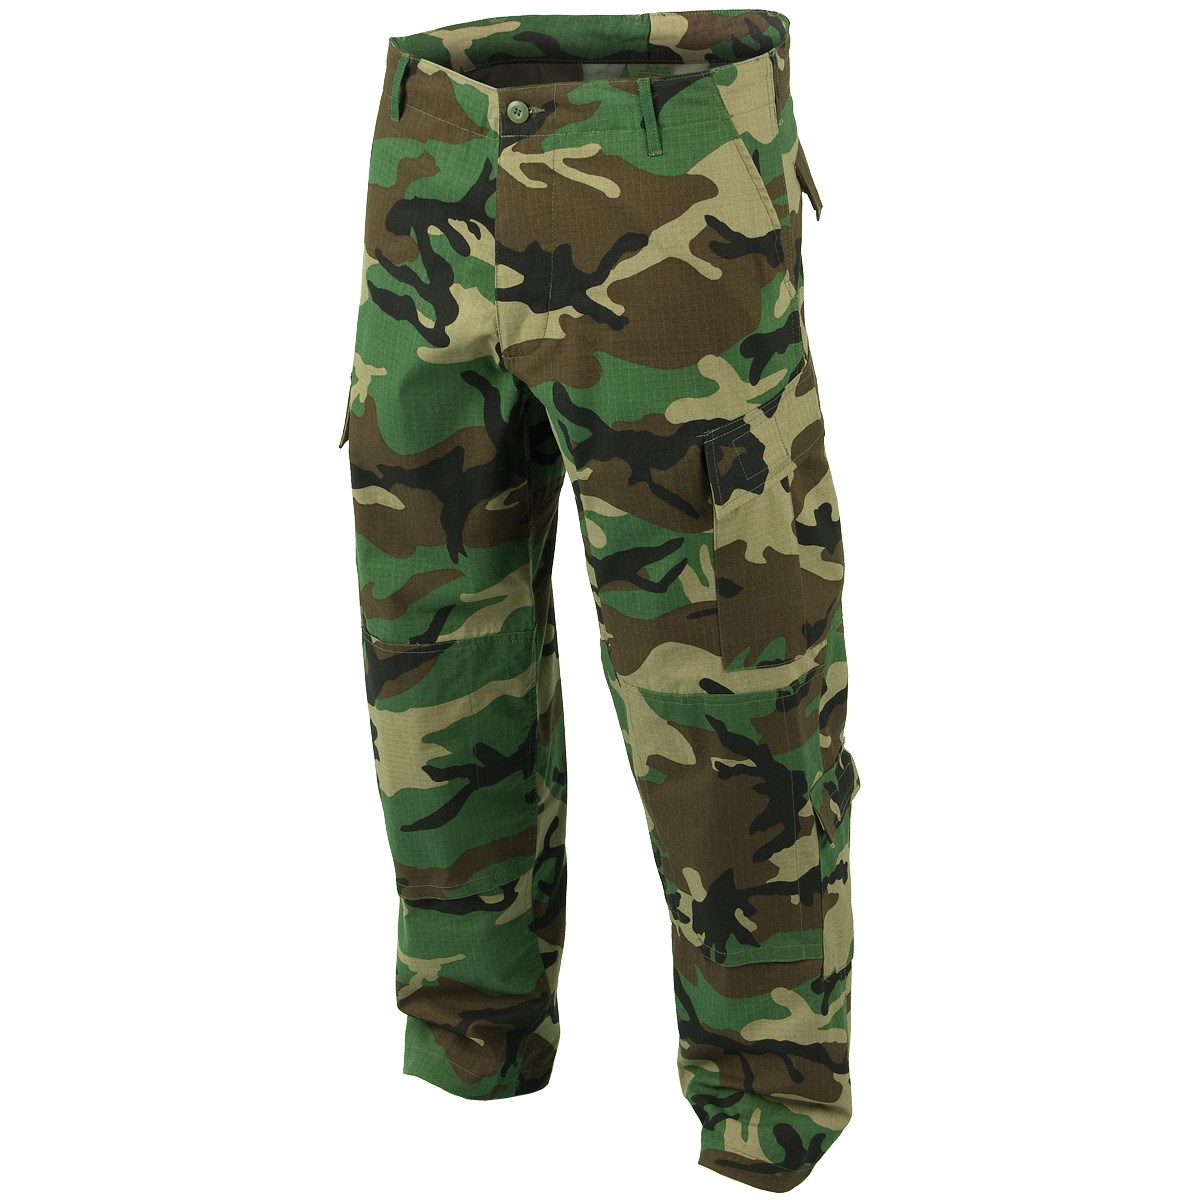 MIL-TEC U.S. ACU pants type of rip-stop WOODLAND | Army surplus ...